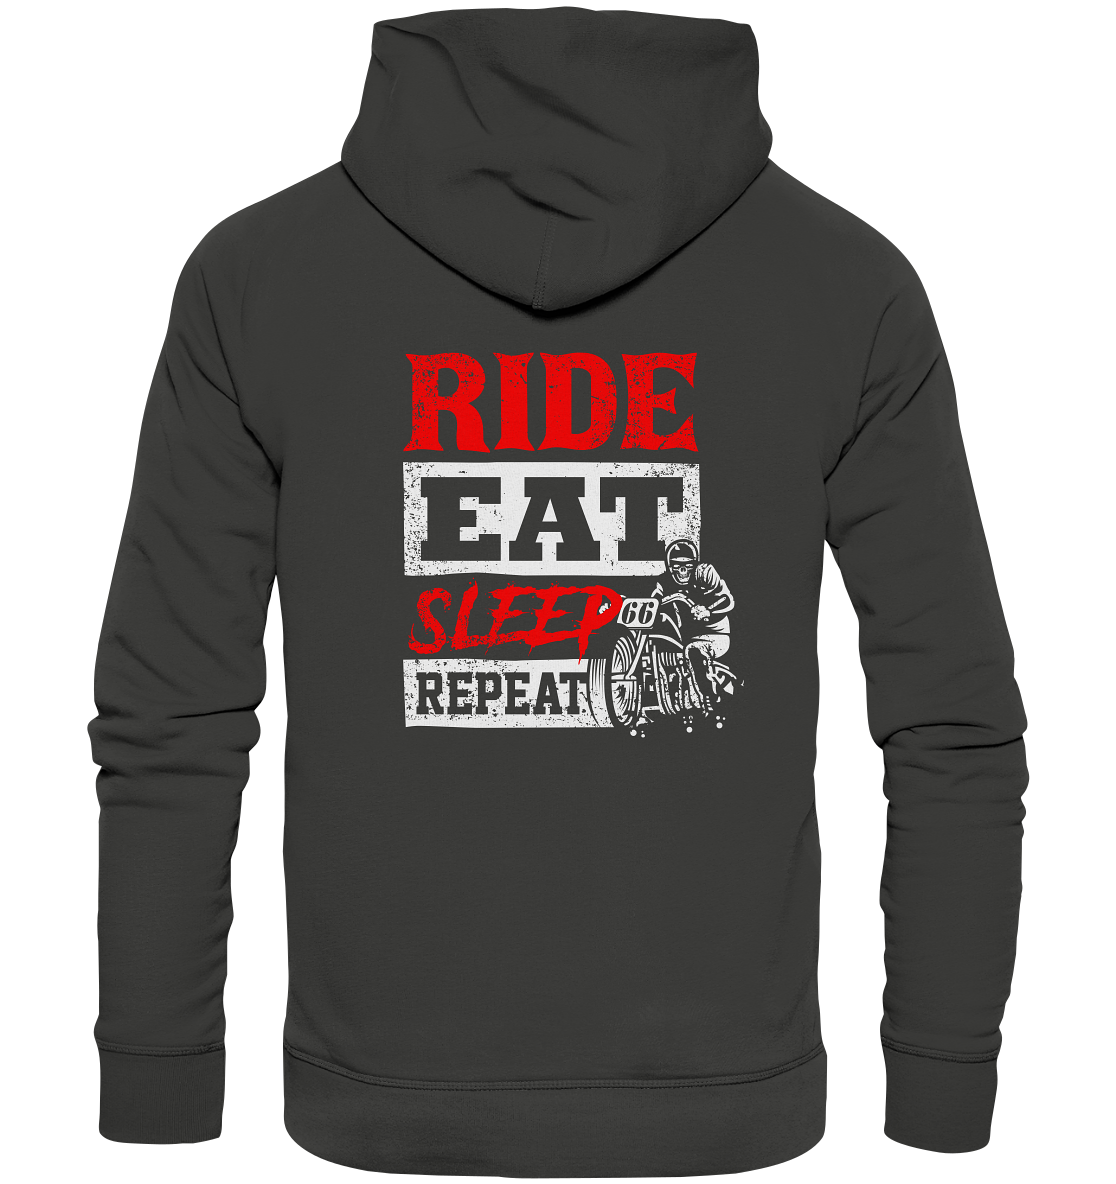 Ride, eat, sleep, repeat - Premium Unisex Hoodie